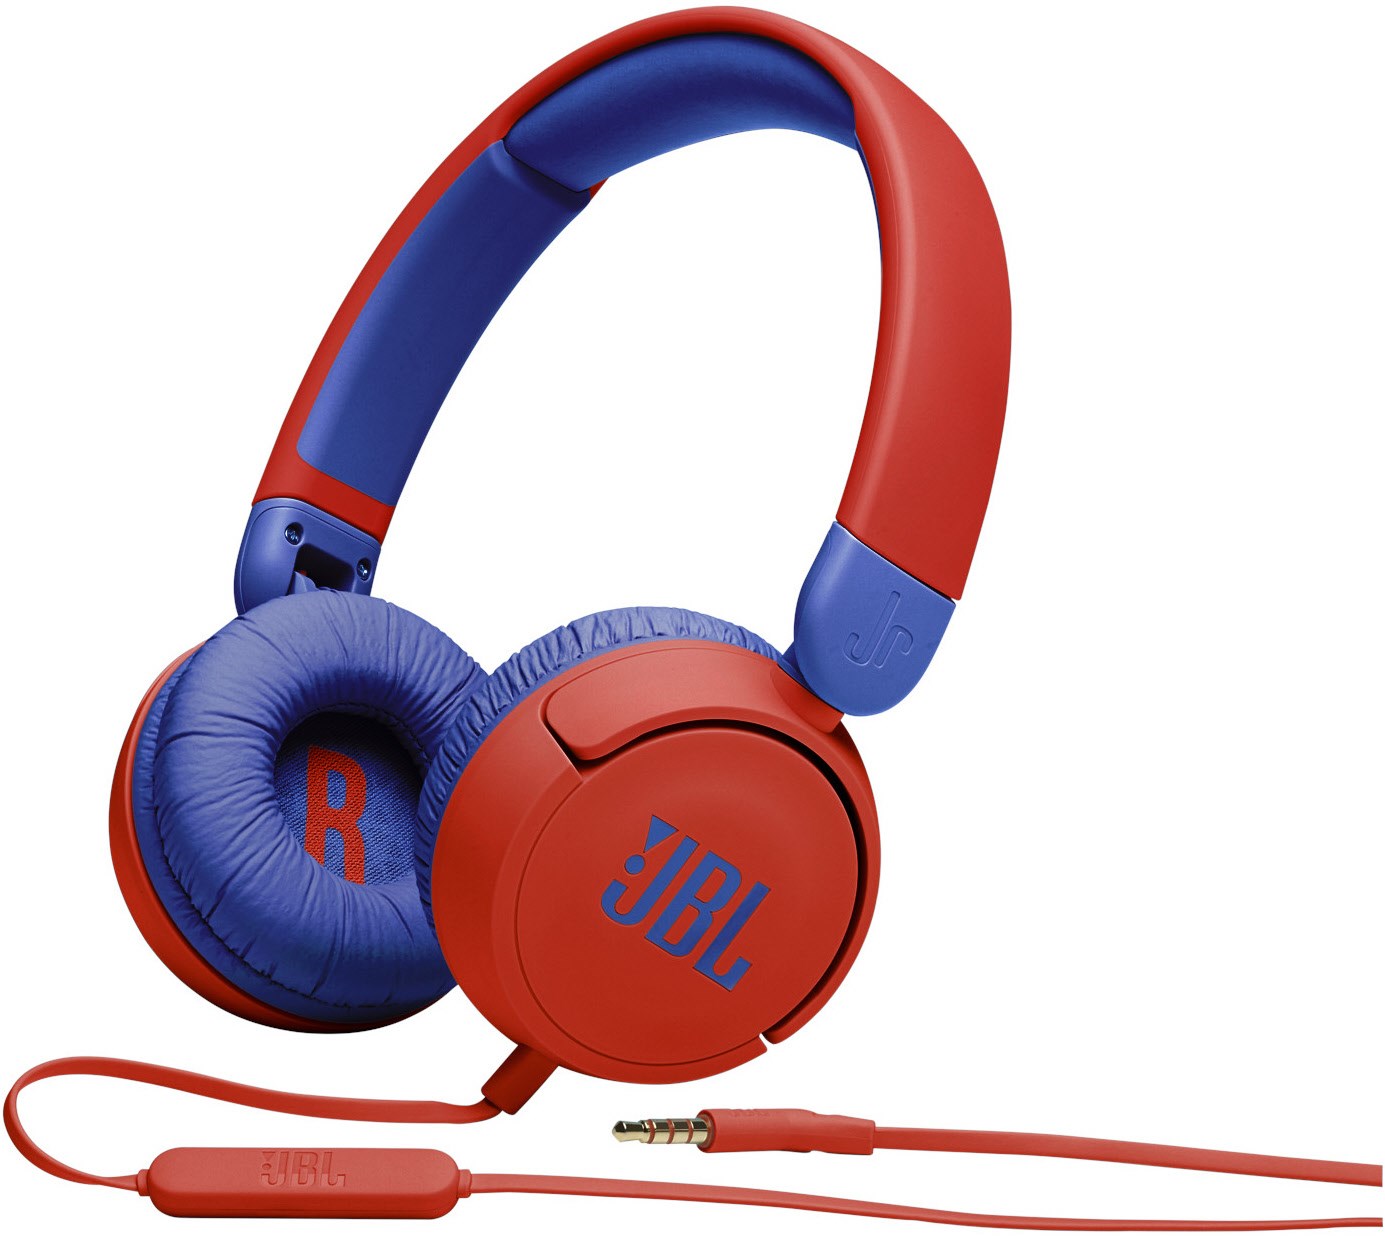 JR310 Kopfhörer mit Kabel rot/blau von JBL